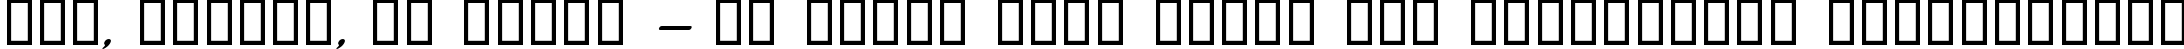 Пример написания шрифтом Jerusalem Italic текста на украинском